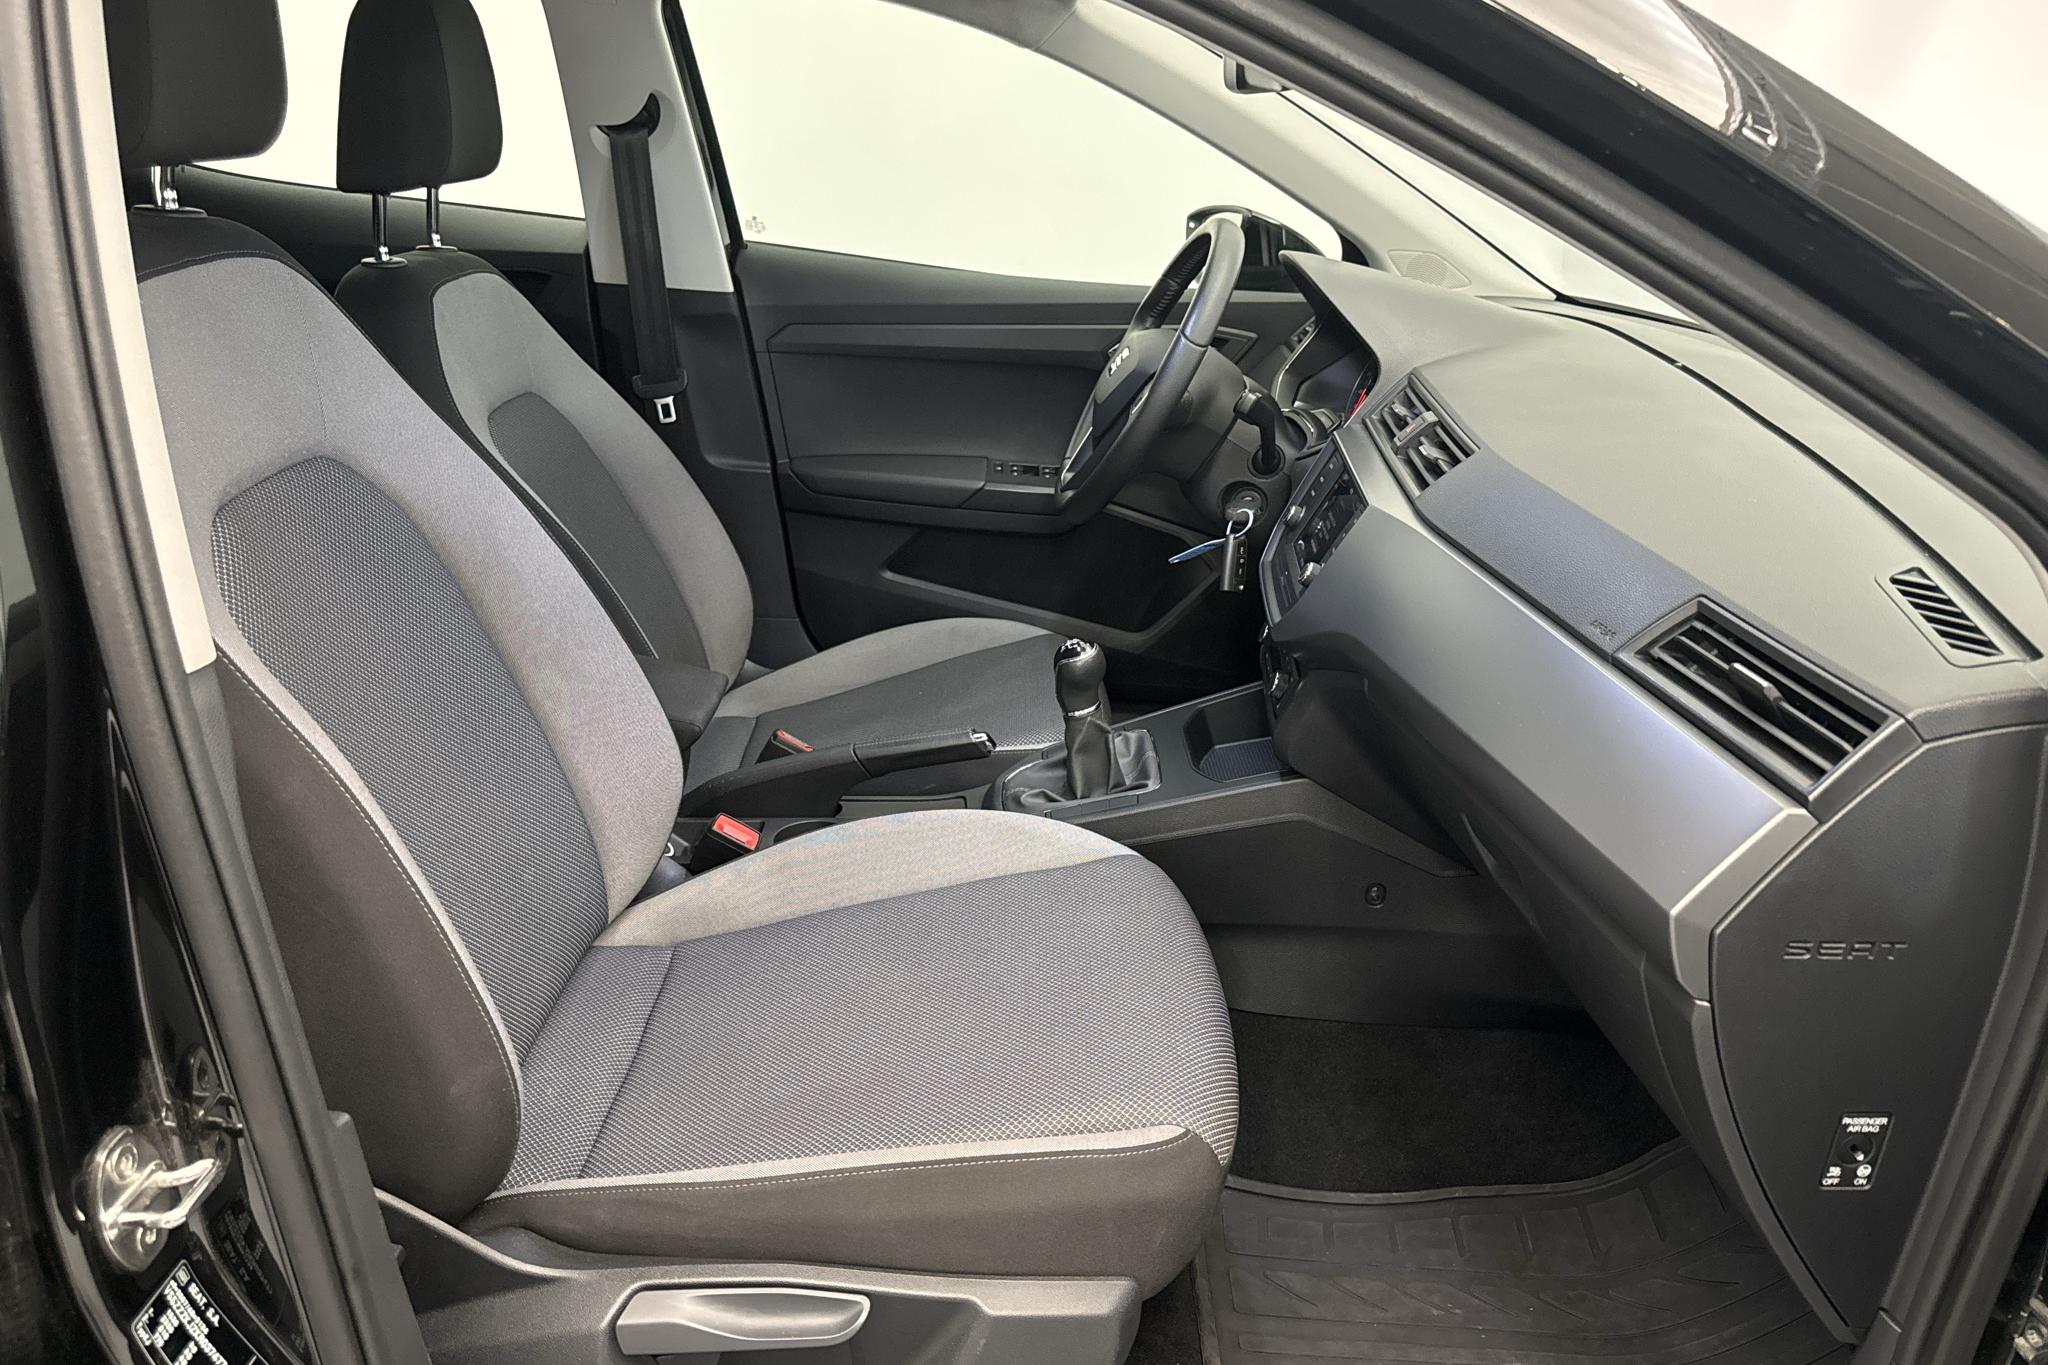 Seat Ibiza 1.0 MPI 5dr (80hk) - 58 580 km - Manual - black - 2019